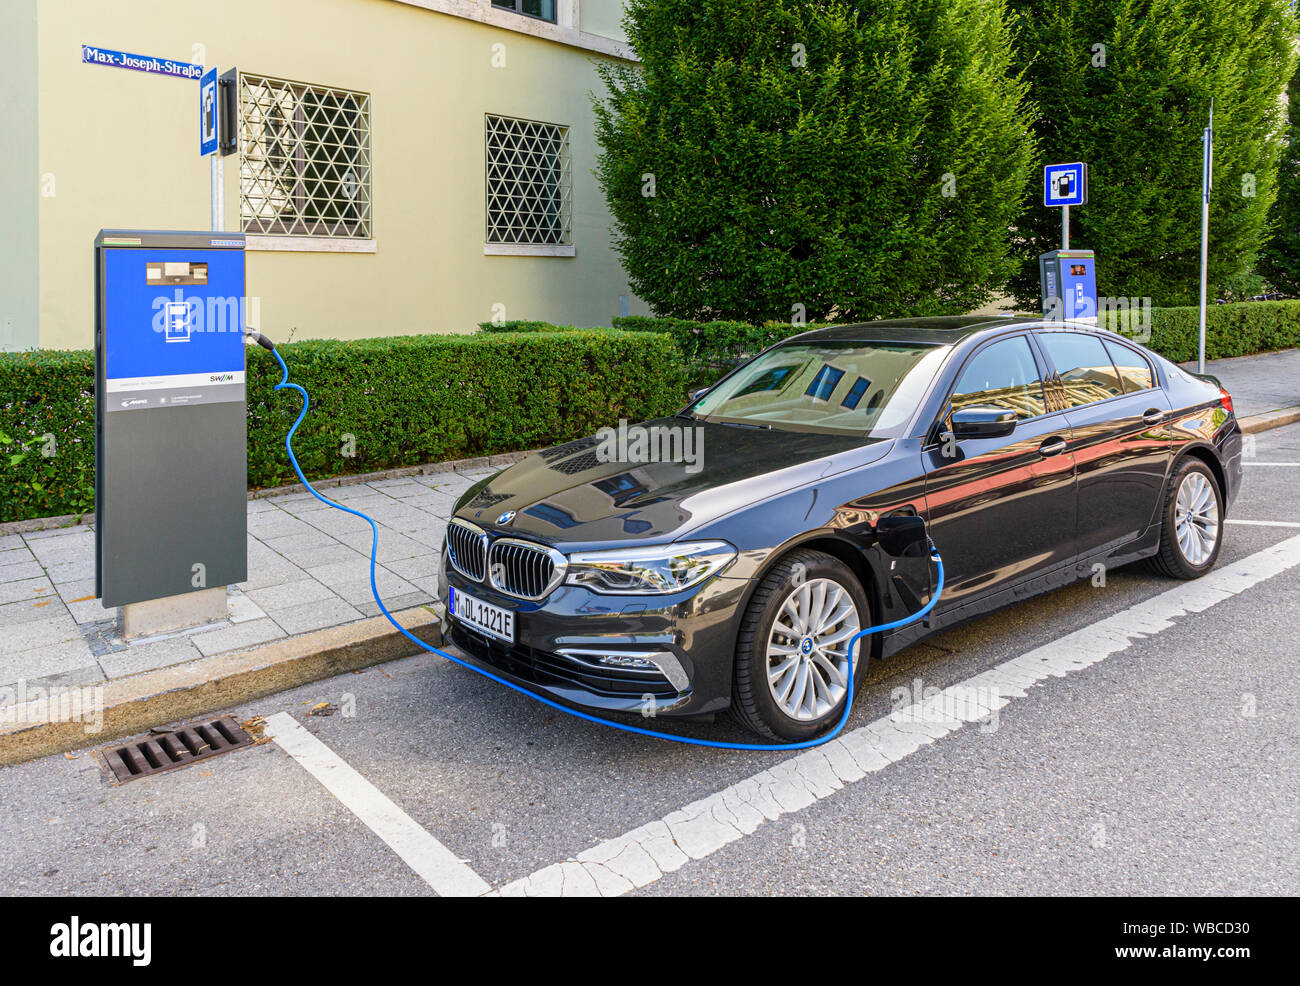 BMW 5er Plug-in-Hybrid an eine Ladestation in München, Deutschland  Stockfotografie - Alamy